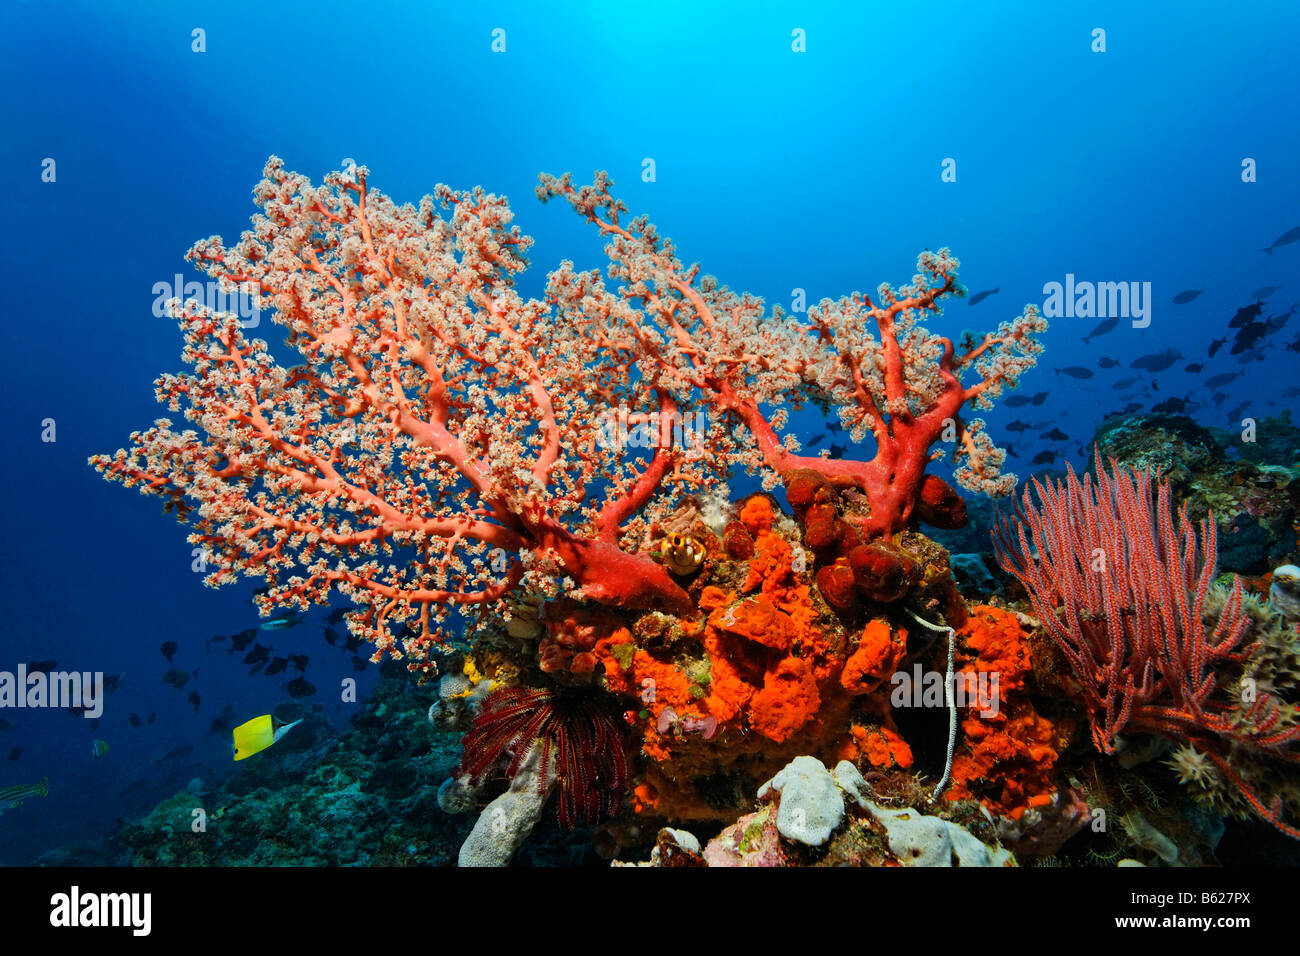 Arrecifes de coral con corales blandos (Octocorallia), Mar-chorros (Ascidiae), esponjas (Polyfera), multi-color negro Crinoid, lirio de mar Foto de stock